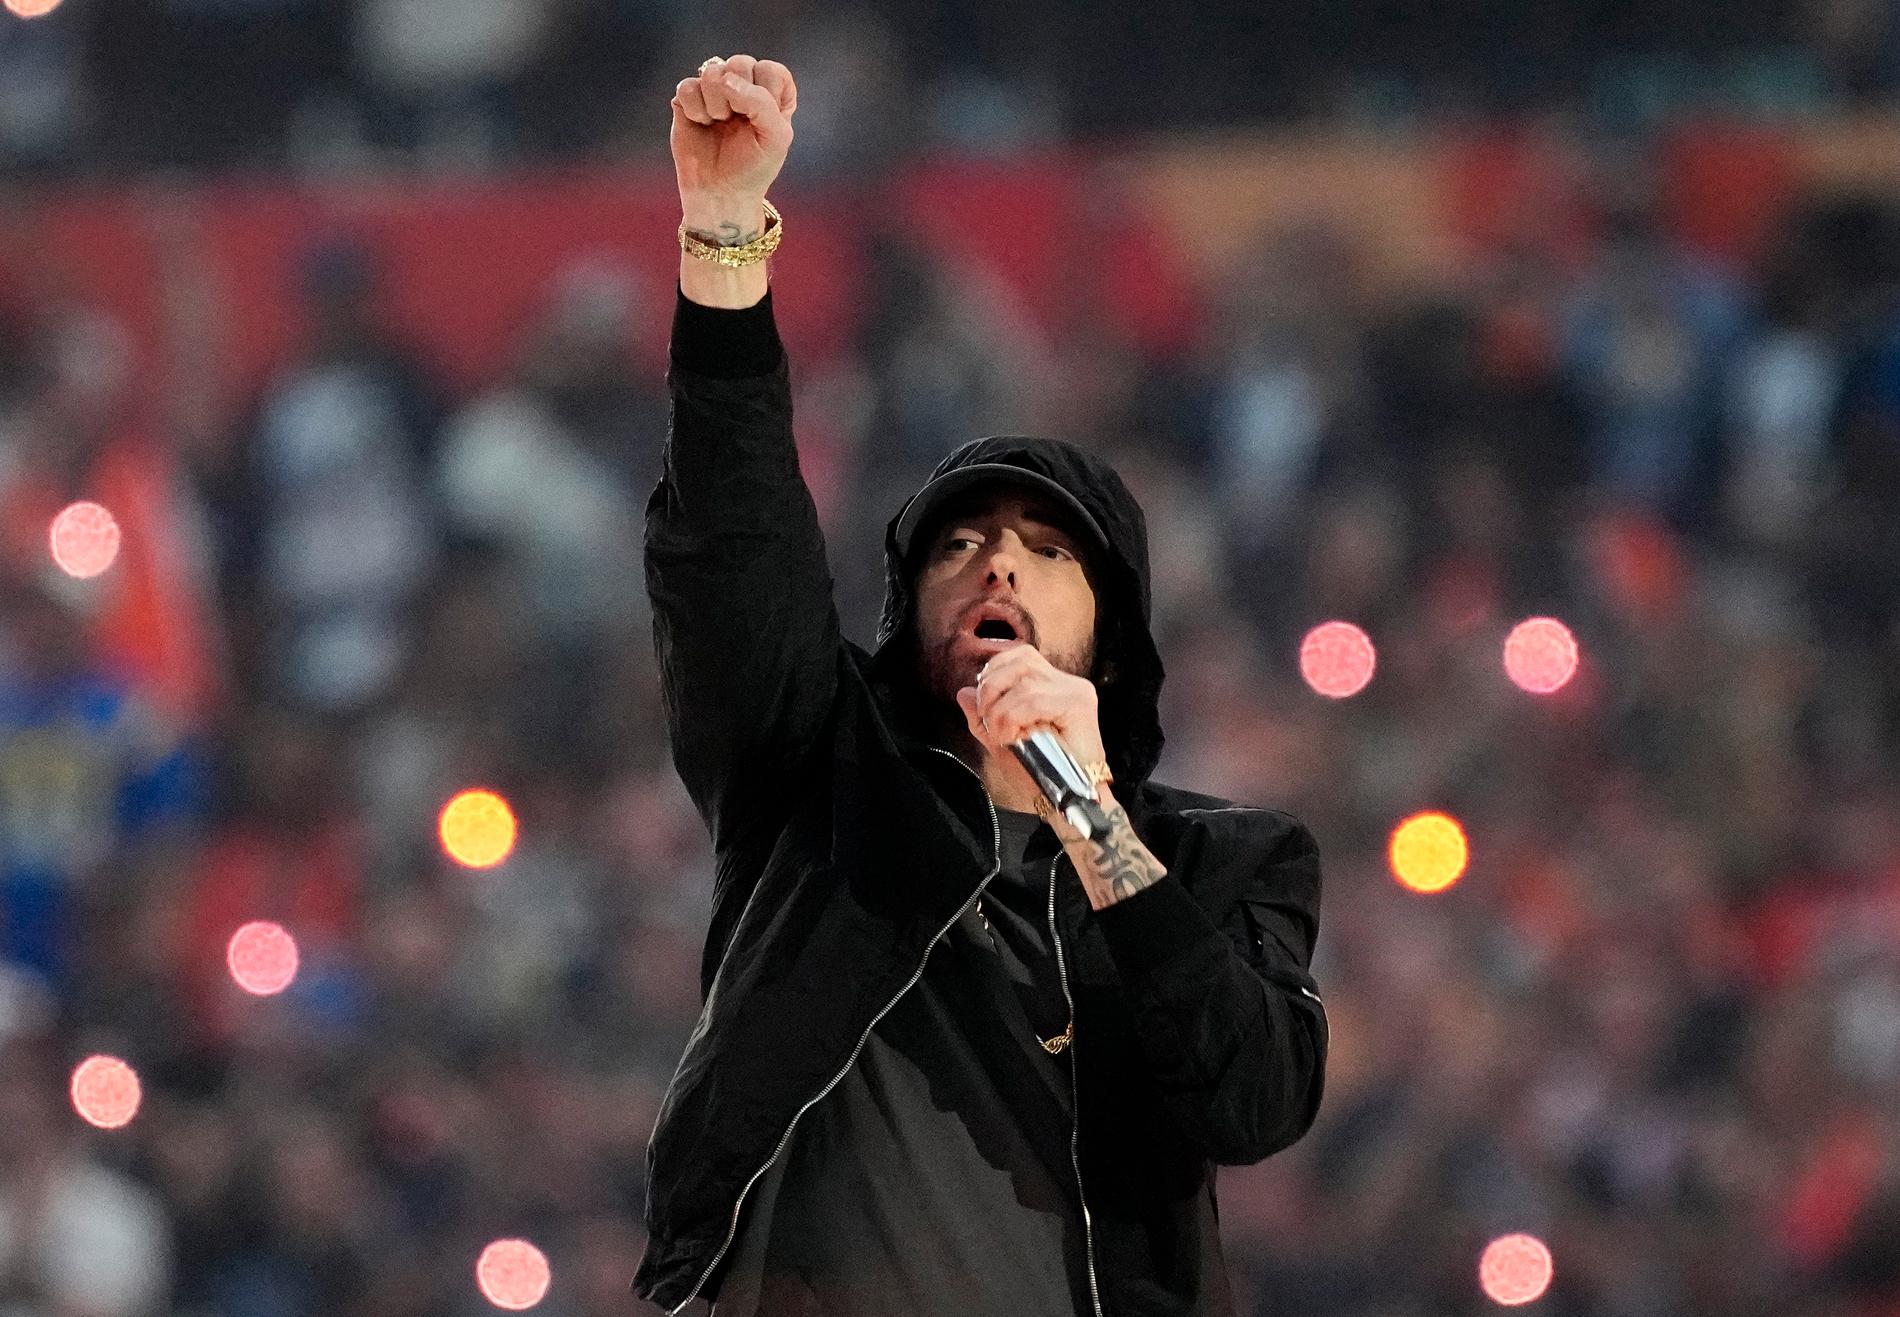 Eminem ger ut ny musik. Arkivbild.